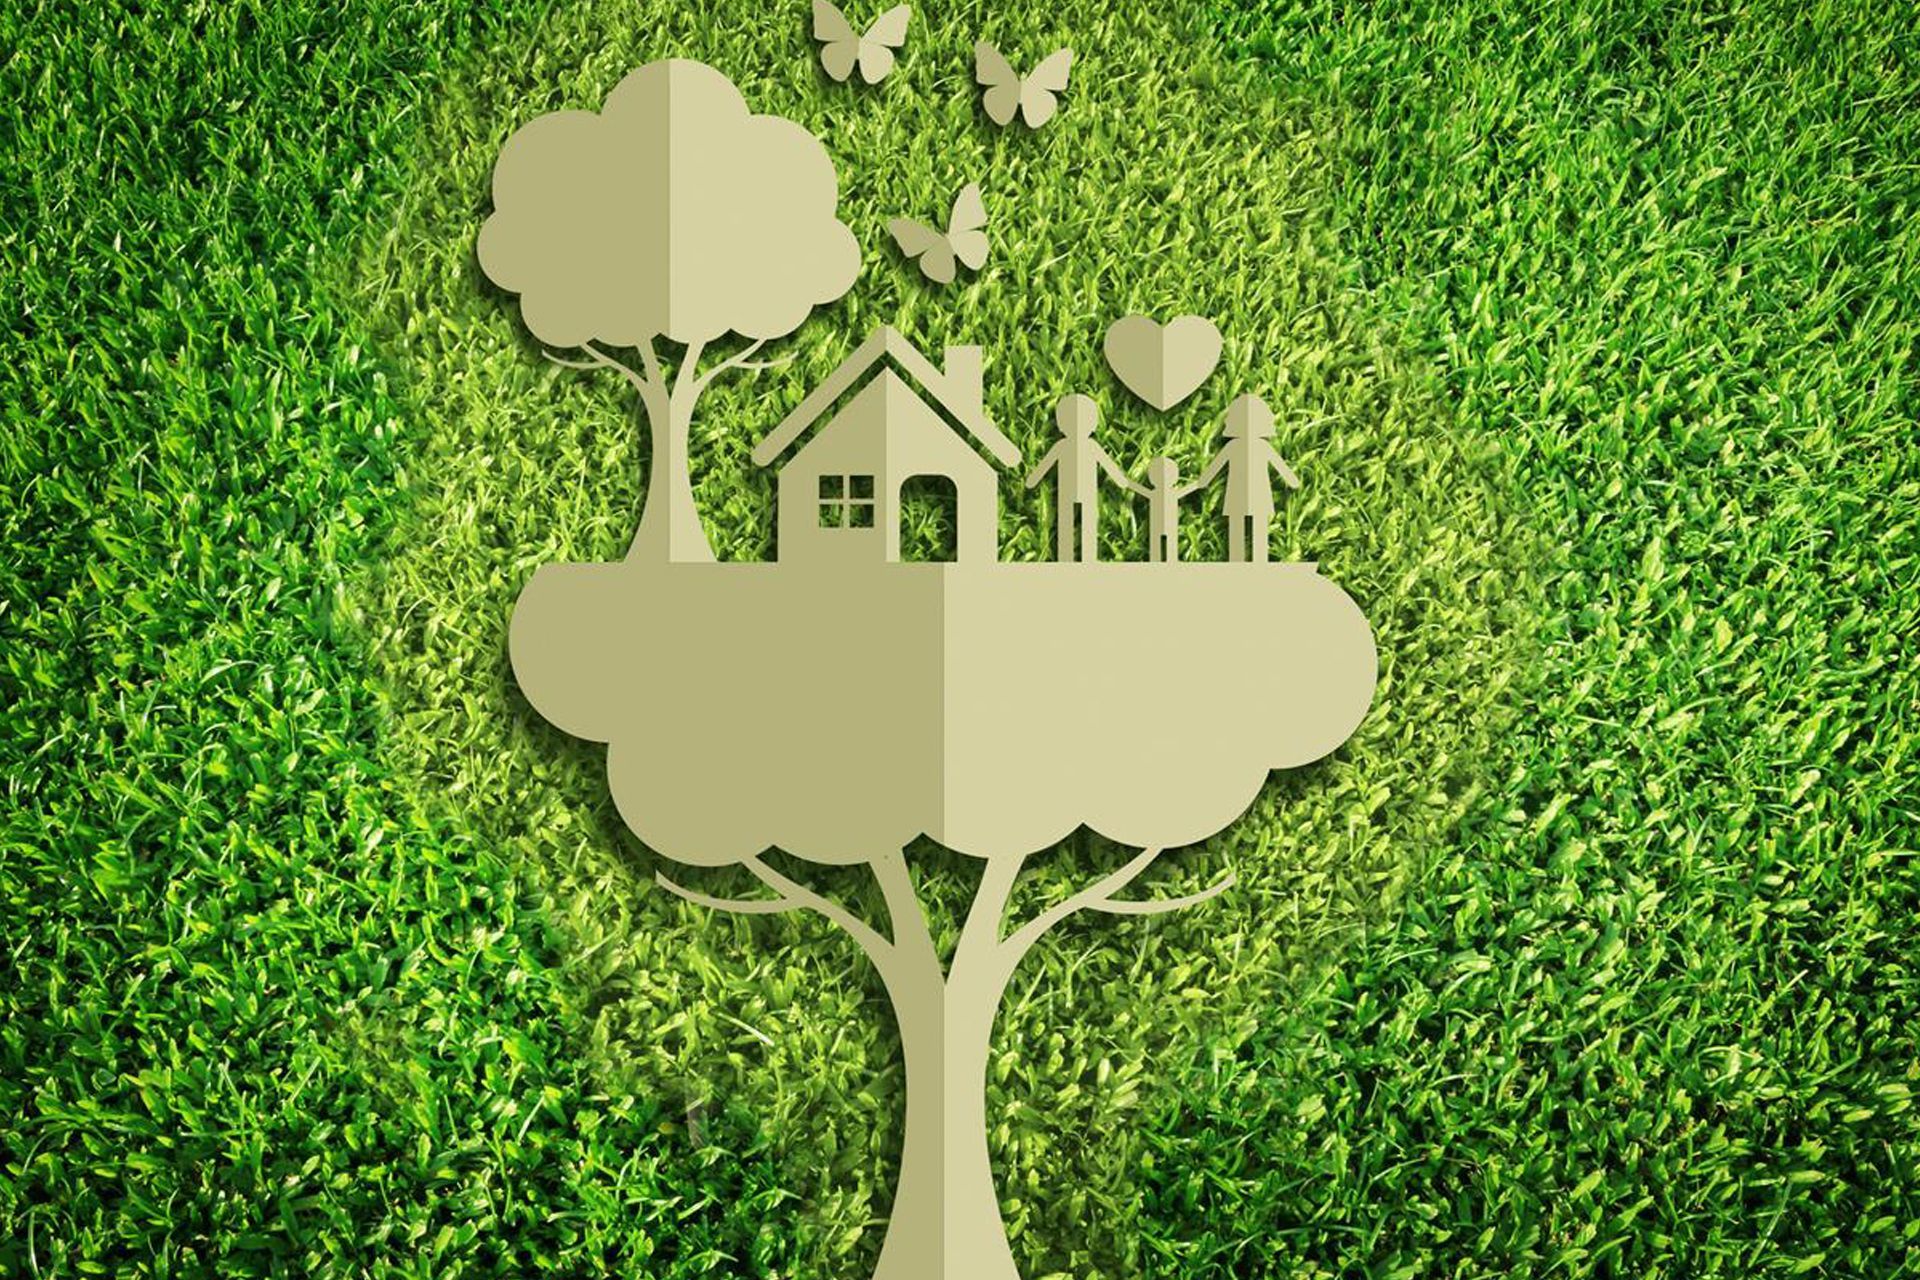 La transizione ecologica è perseguibile a piccoli passi e con la collaborazione di tutti per progredire verso un’economia “green” e per lasciarsi la vecchia società consumistica e sfruttatrice